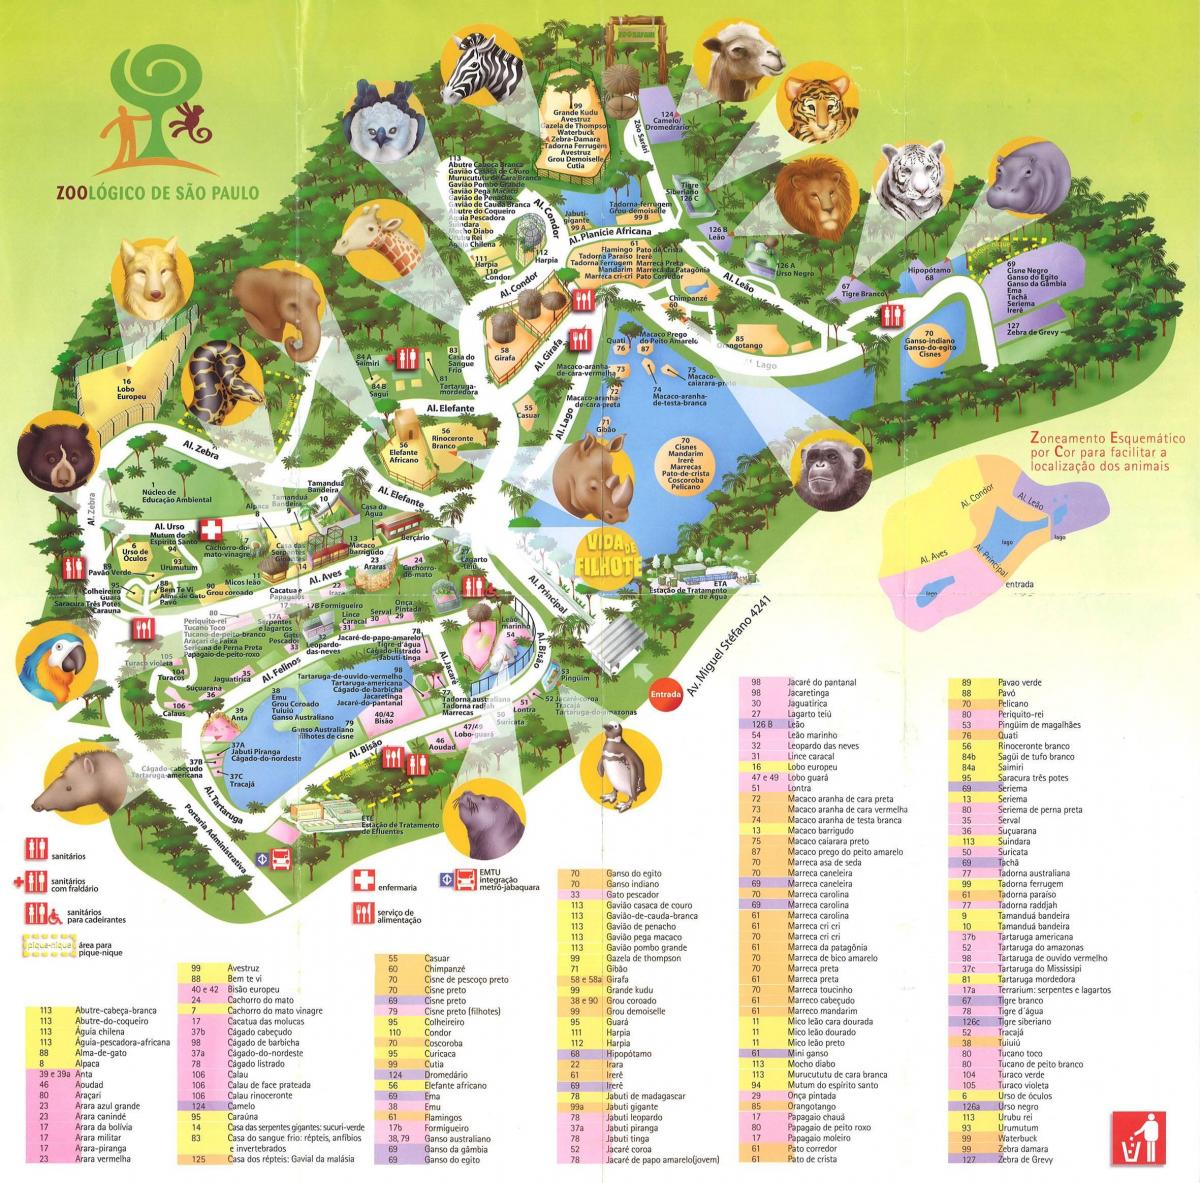 નકશો ઝૂઓલોજિકલ પાર્ક સાઓ પાઉલો